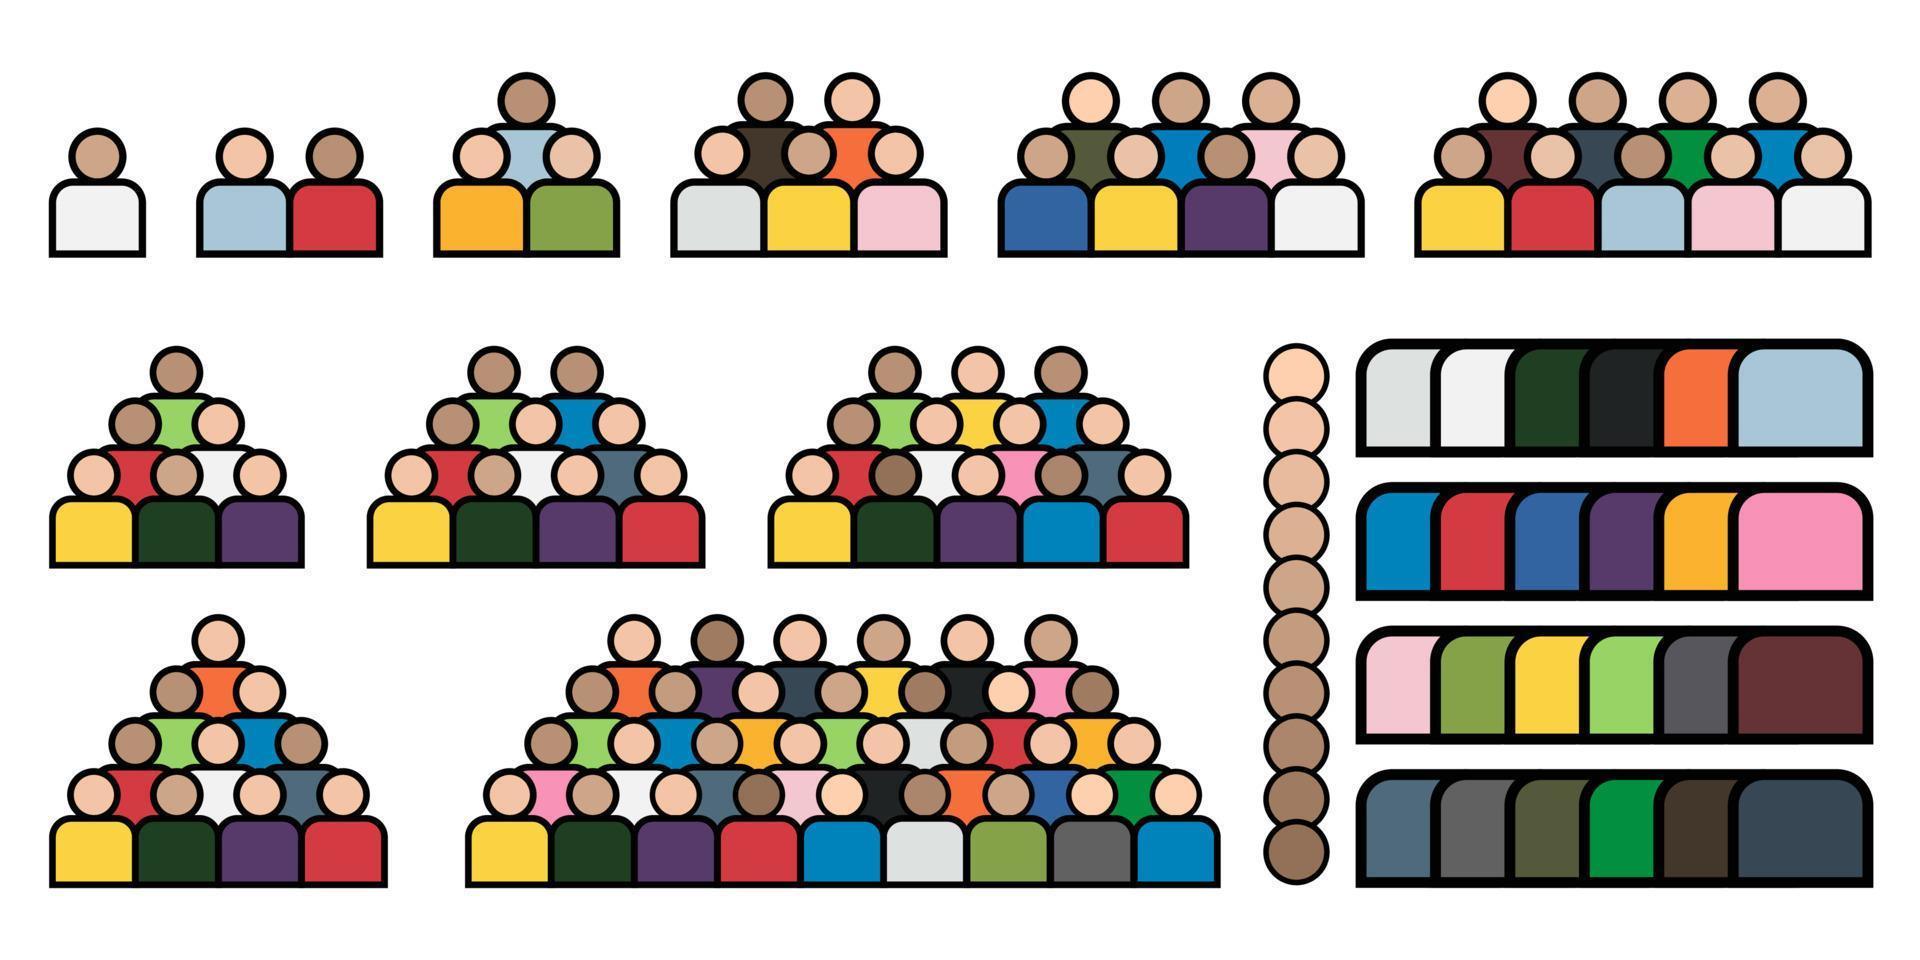 groupe de personnes rassemblant un jeu d'icônes avec différentes couleurs de peau et de chemise vecteur